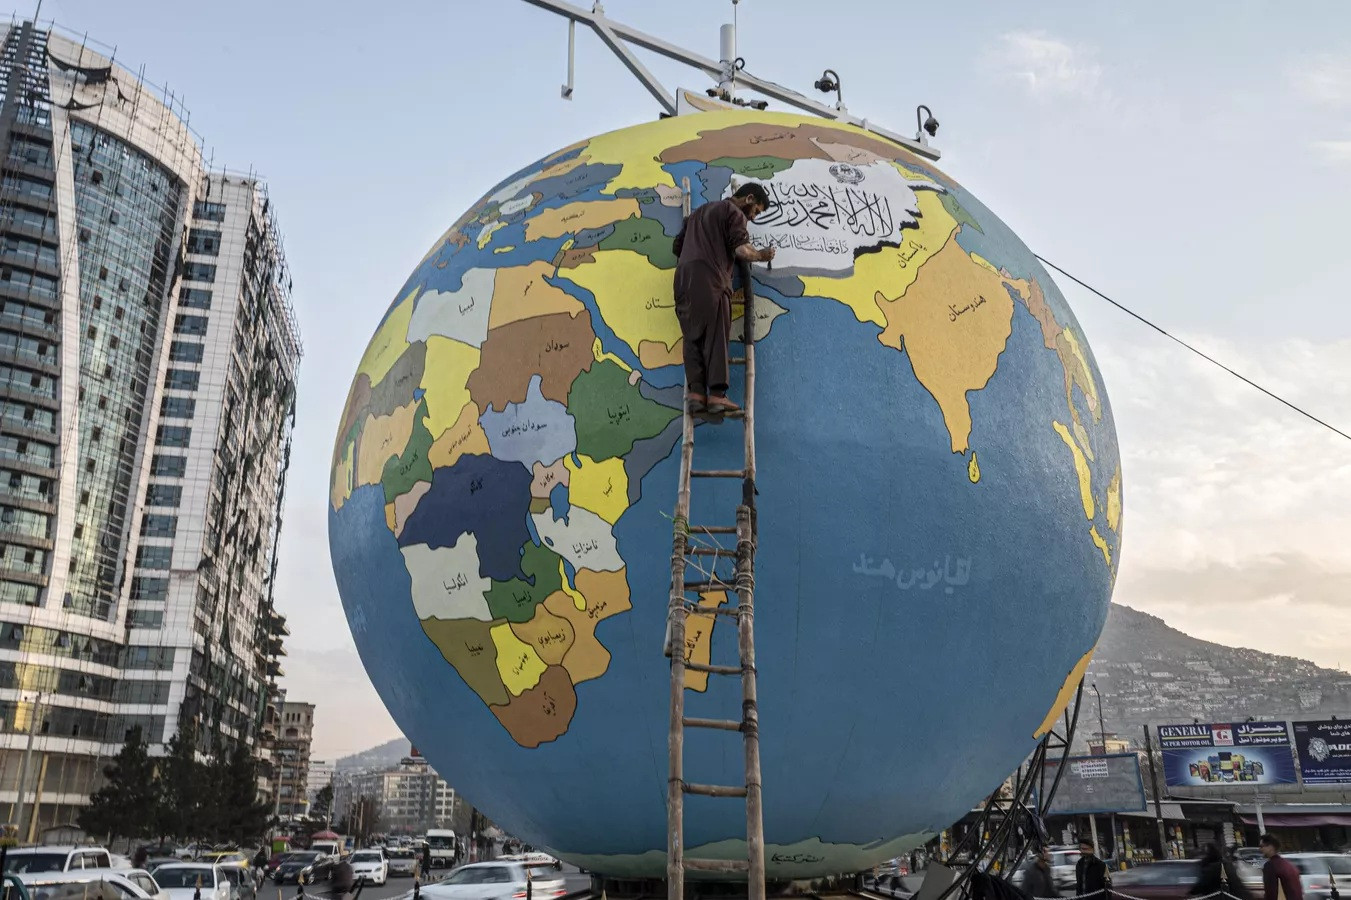 Họa sĩ vẽ những nét cuối cùng trên một quả cầu lớn chứa hành tinh Trái đất ở Kabul, Afghanistan.